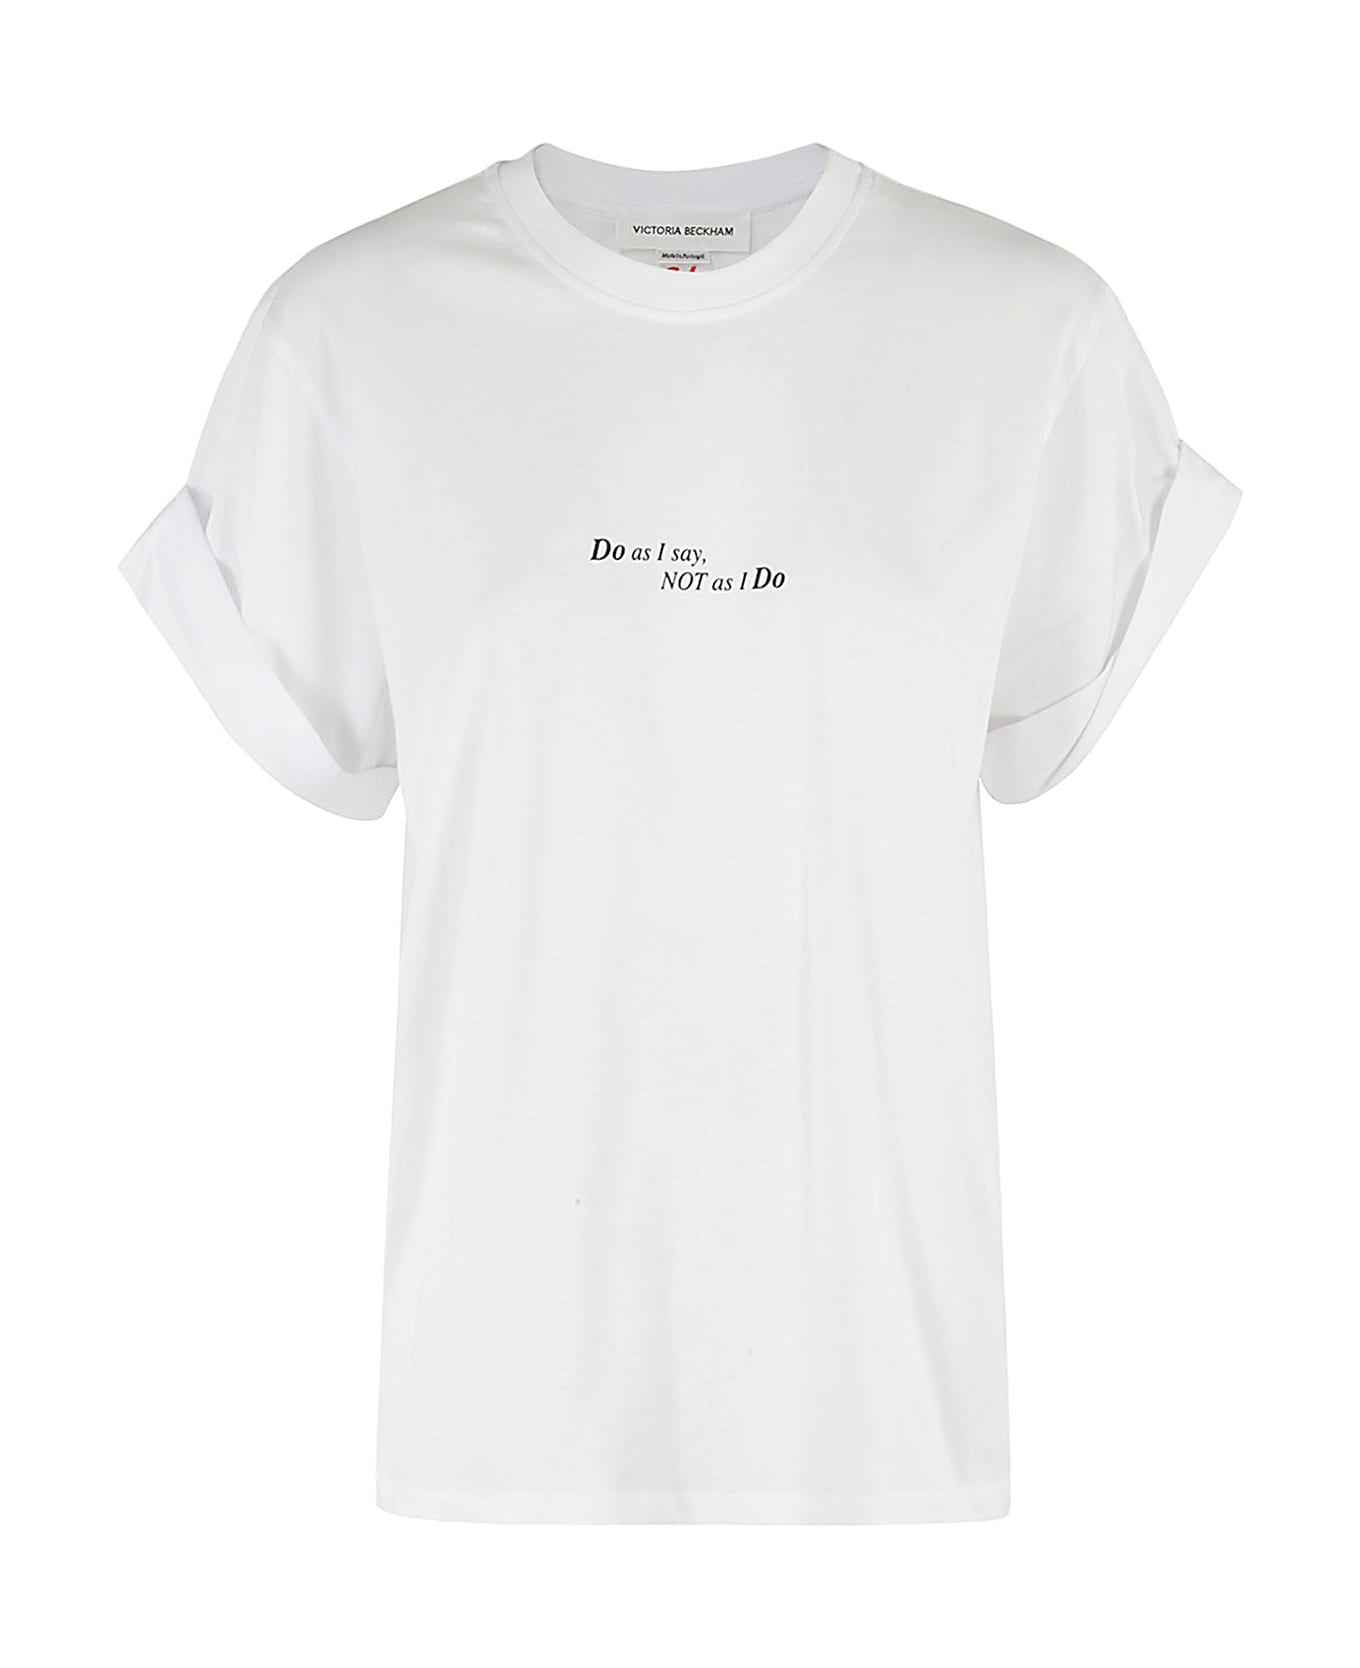 Victoria Beckham Slogan Tee Tシャツ